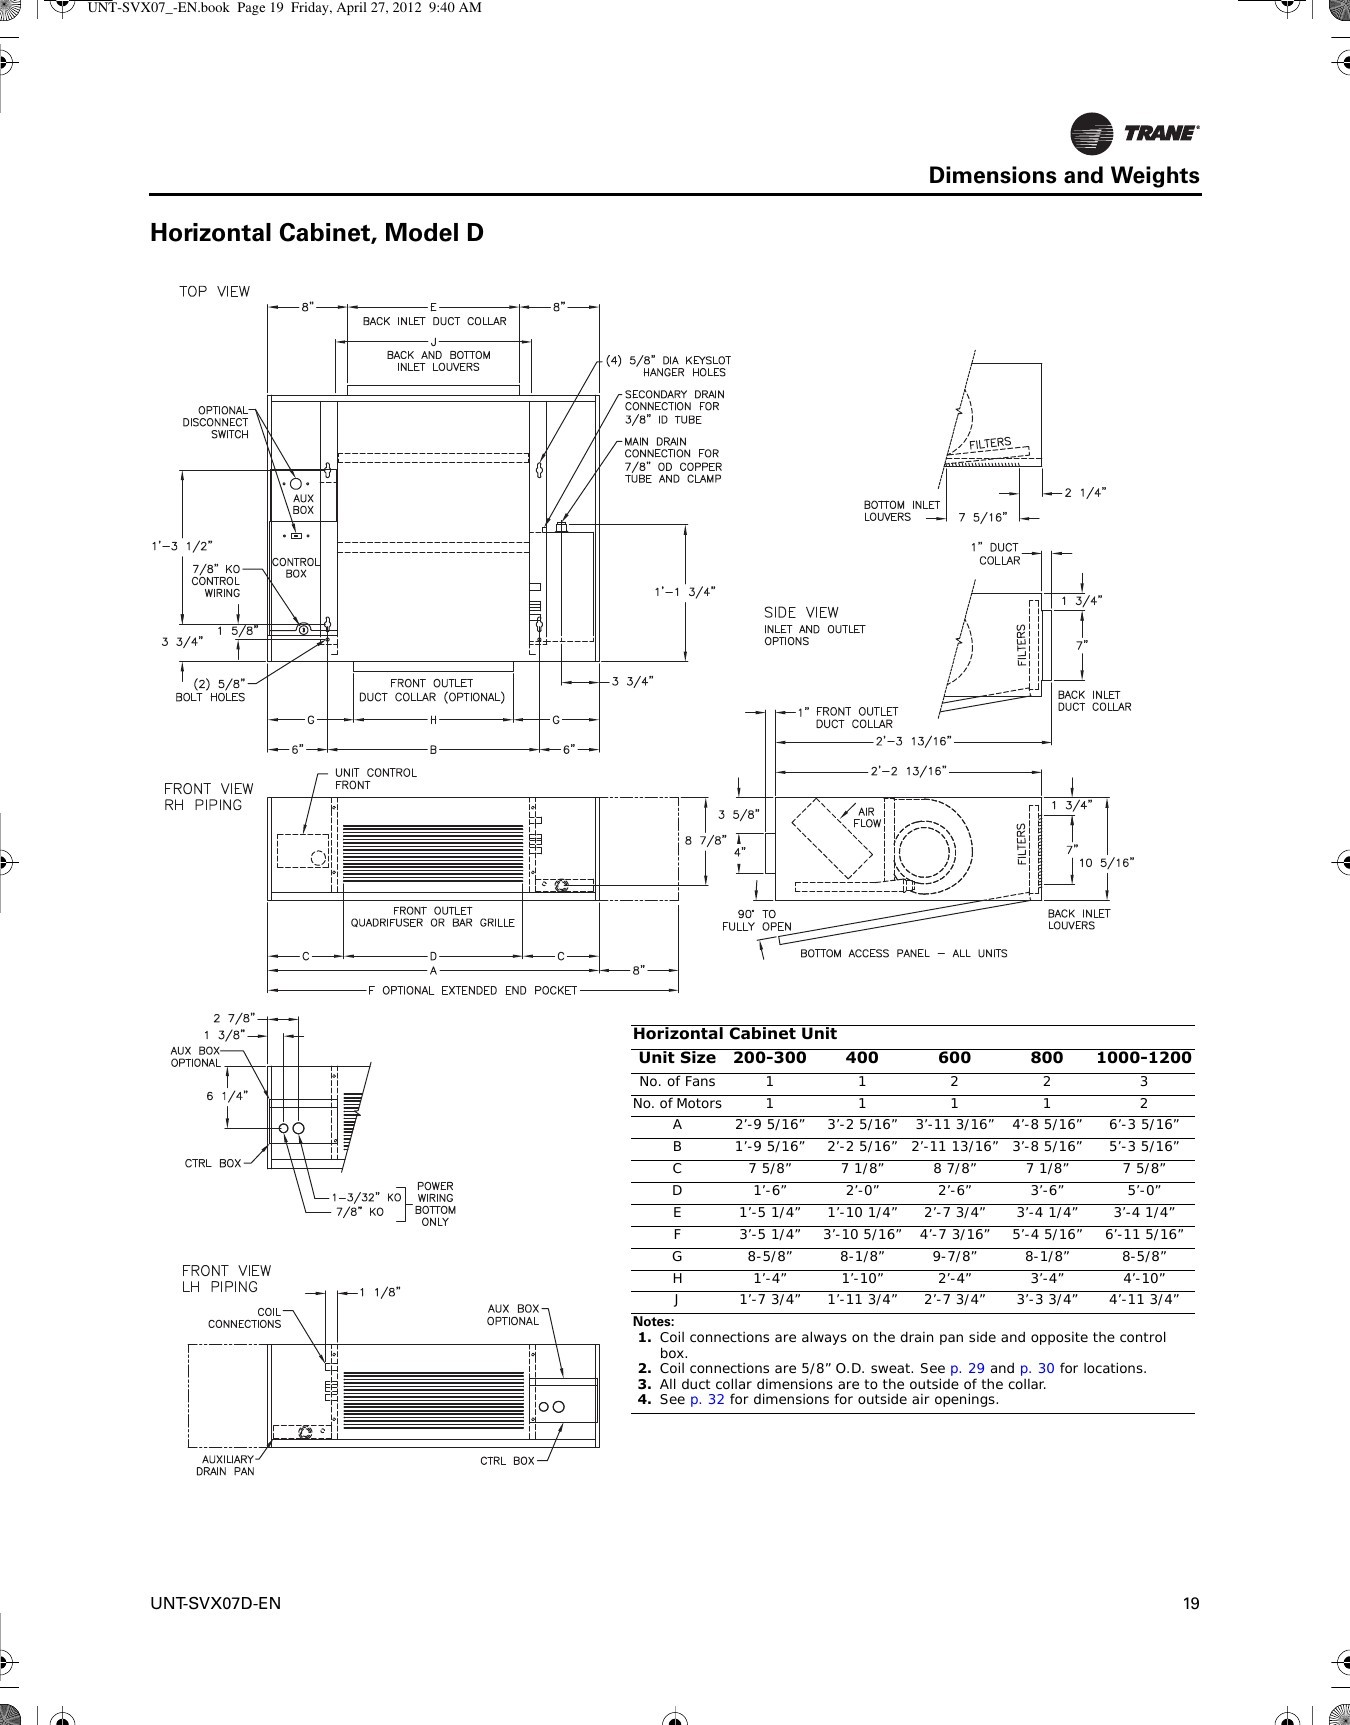 trane wsc060 wiring diagram Download Trane Wiring Diagrams Fresh Trane Heat Pump Troubleshooting Choice Image DOWNLOAD Wiring Diagram